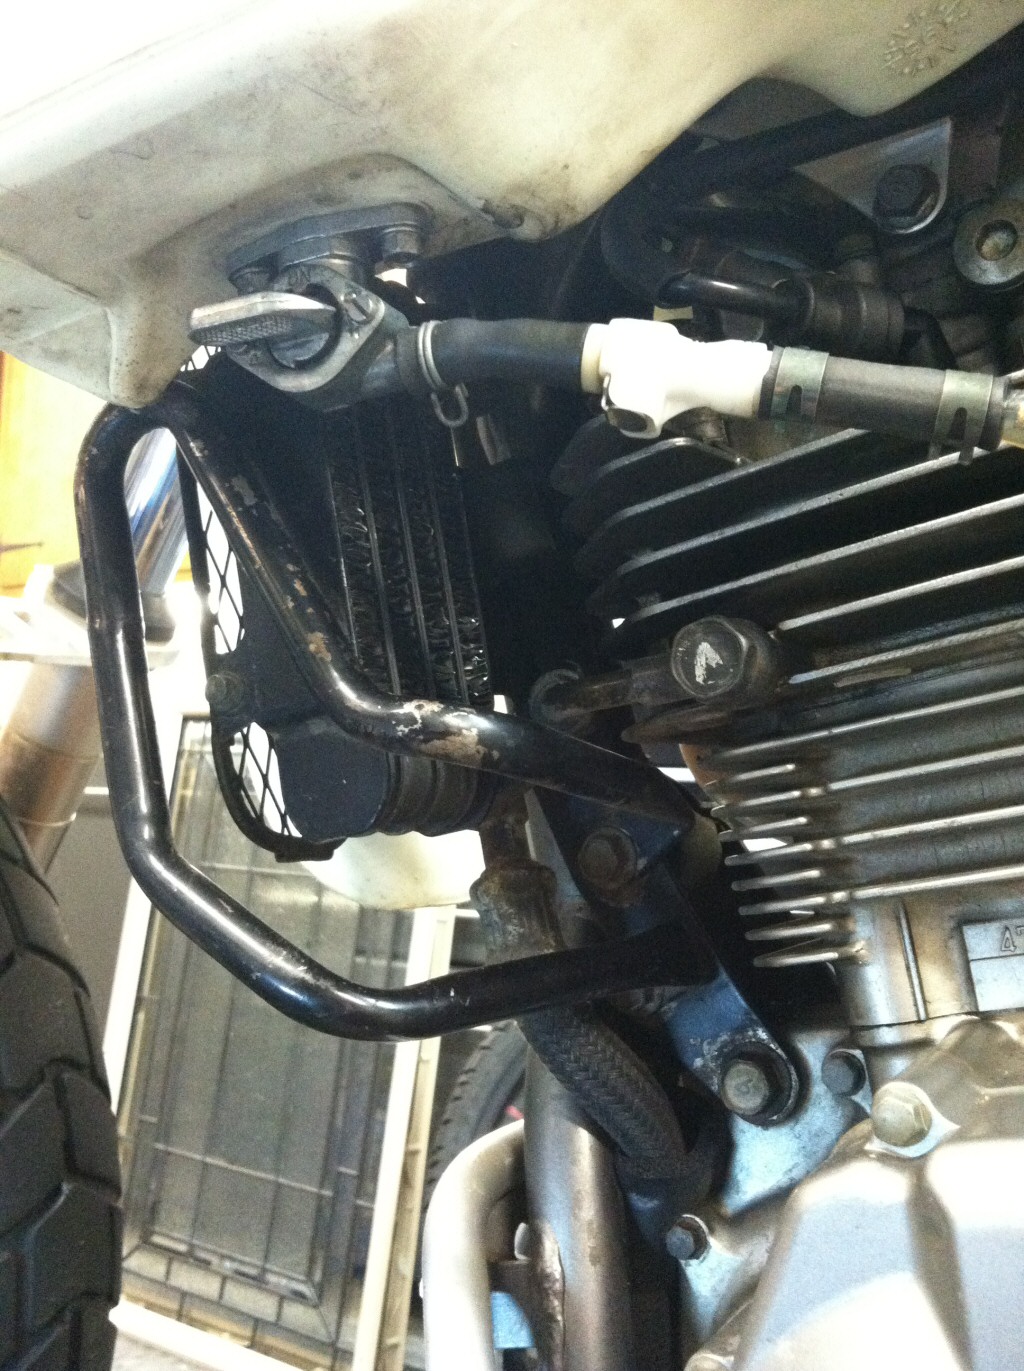 Original oil cooler installed on a Suzuki DR350.